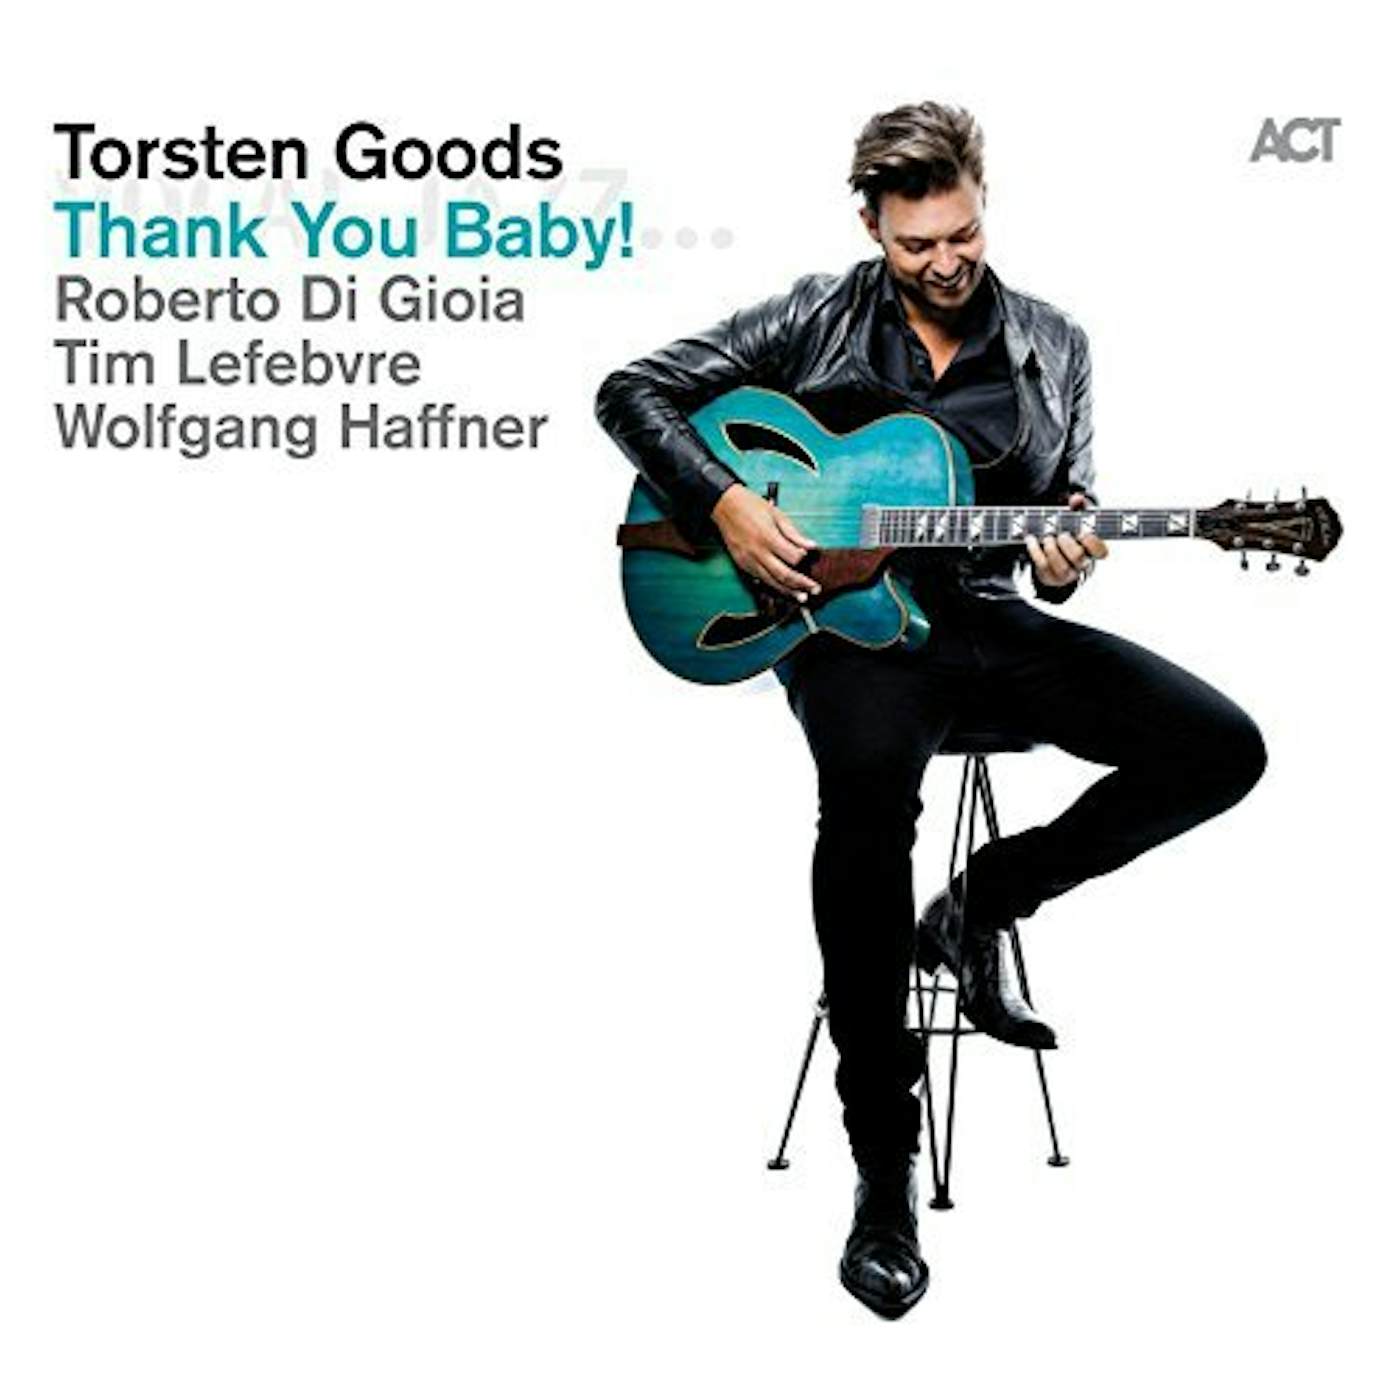 Torsten Goods THANK YOU BABY CD